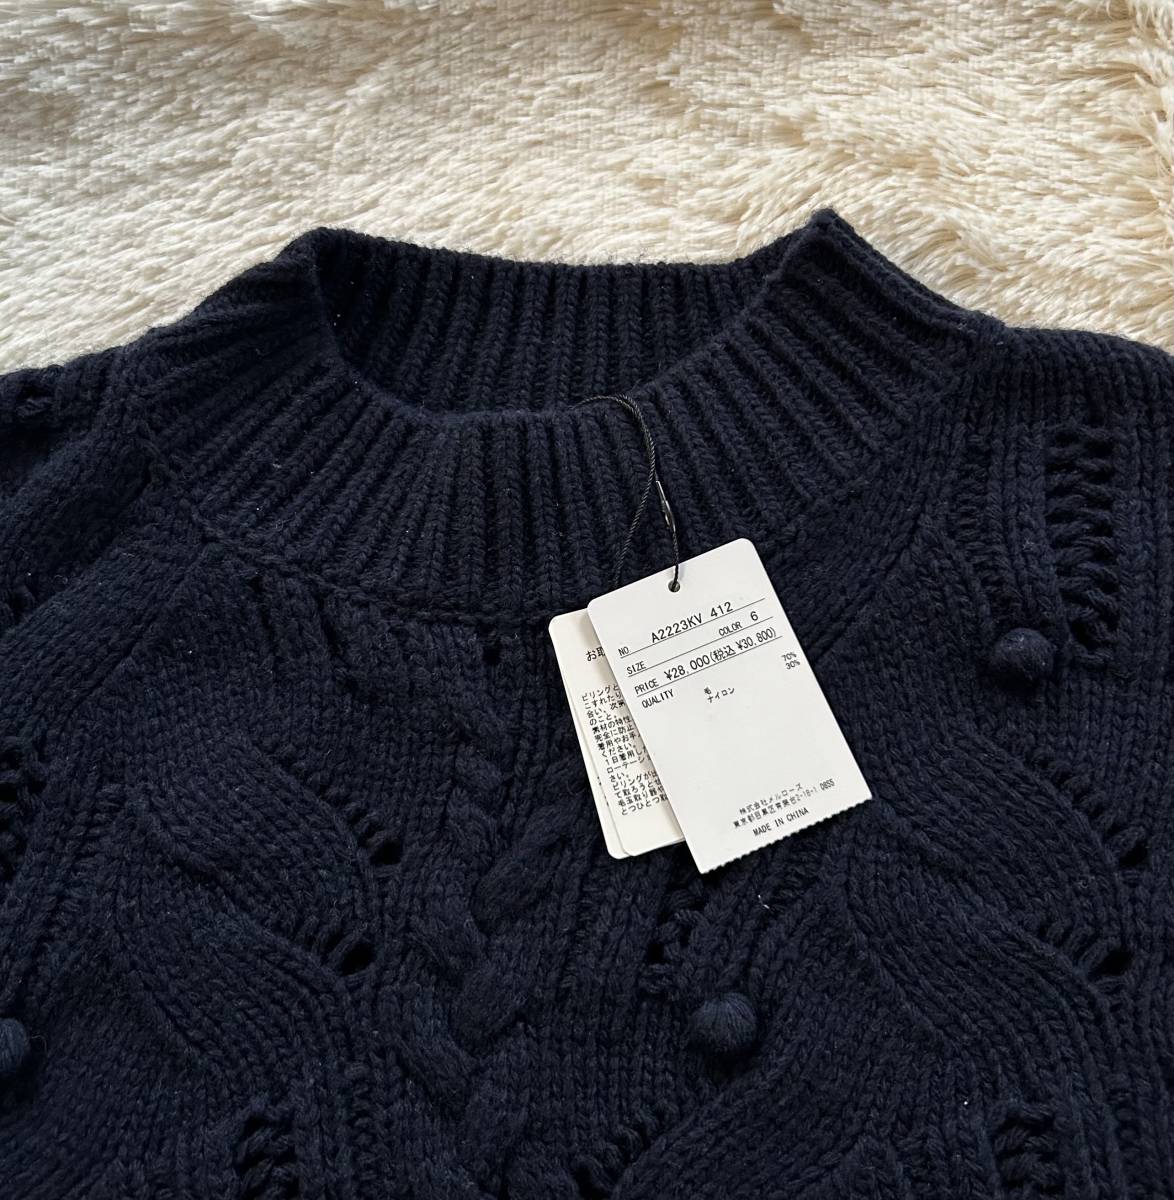  новый товар с биркой!# INGEBORG Ingeborg # Alain плетеный способ с высоким воротником лучший # темно-синий / свободный размер / 30,800 иен 